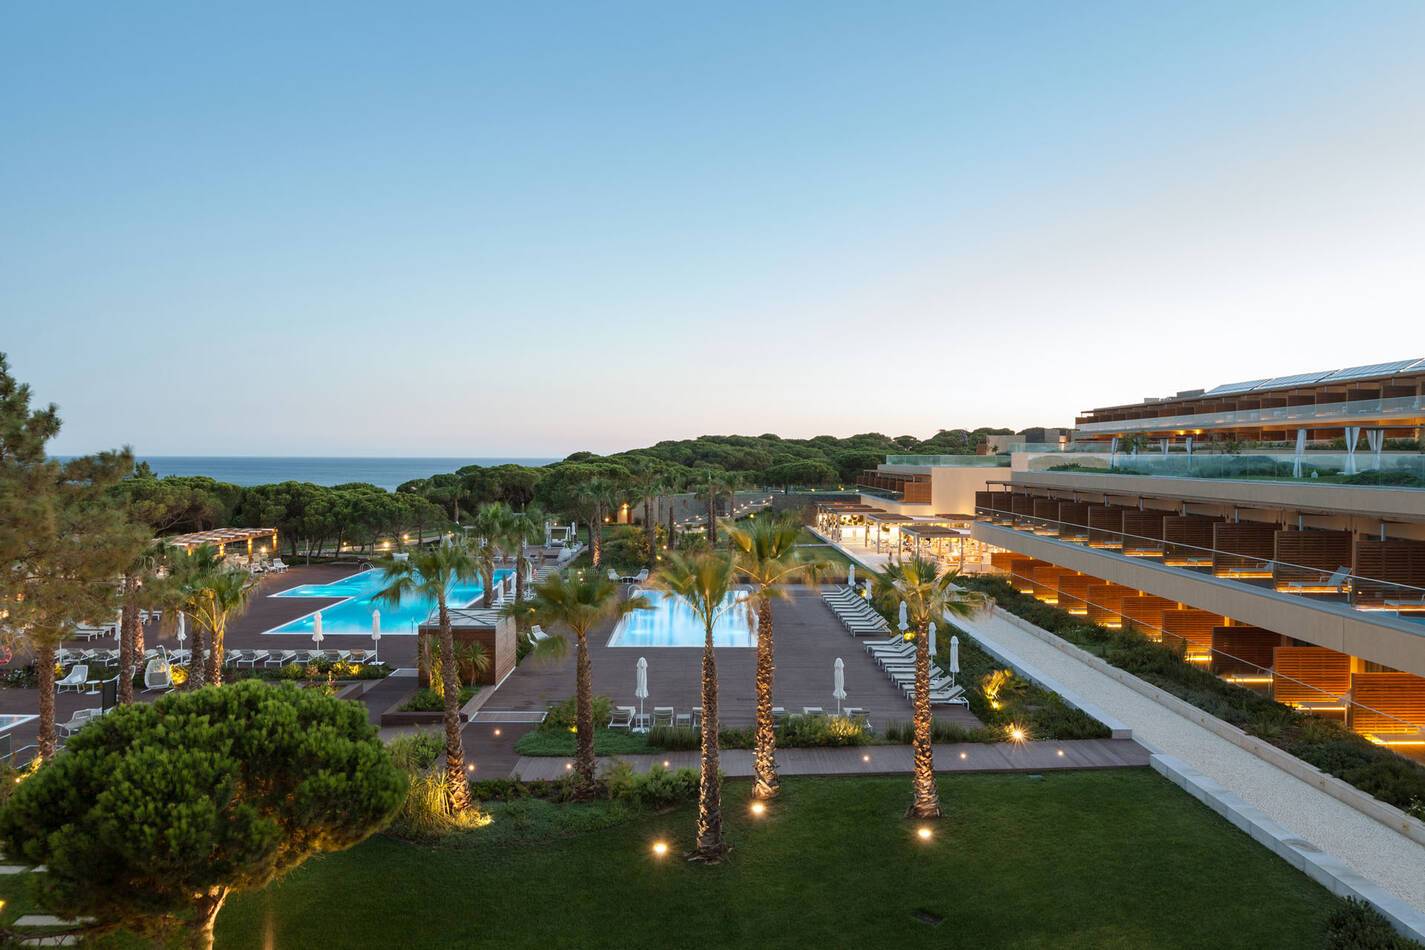 Epic Sana Algarve Portugal Hotel Panoramic View